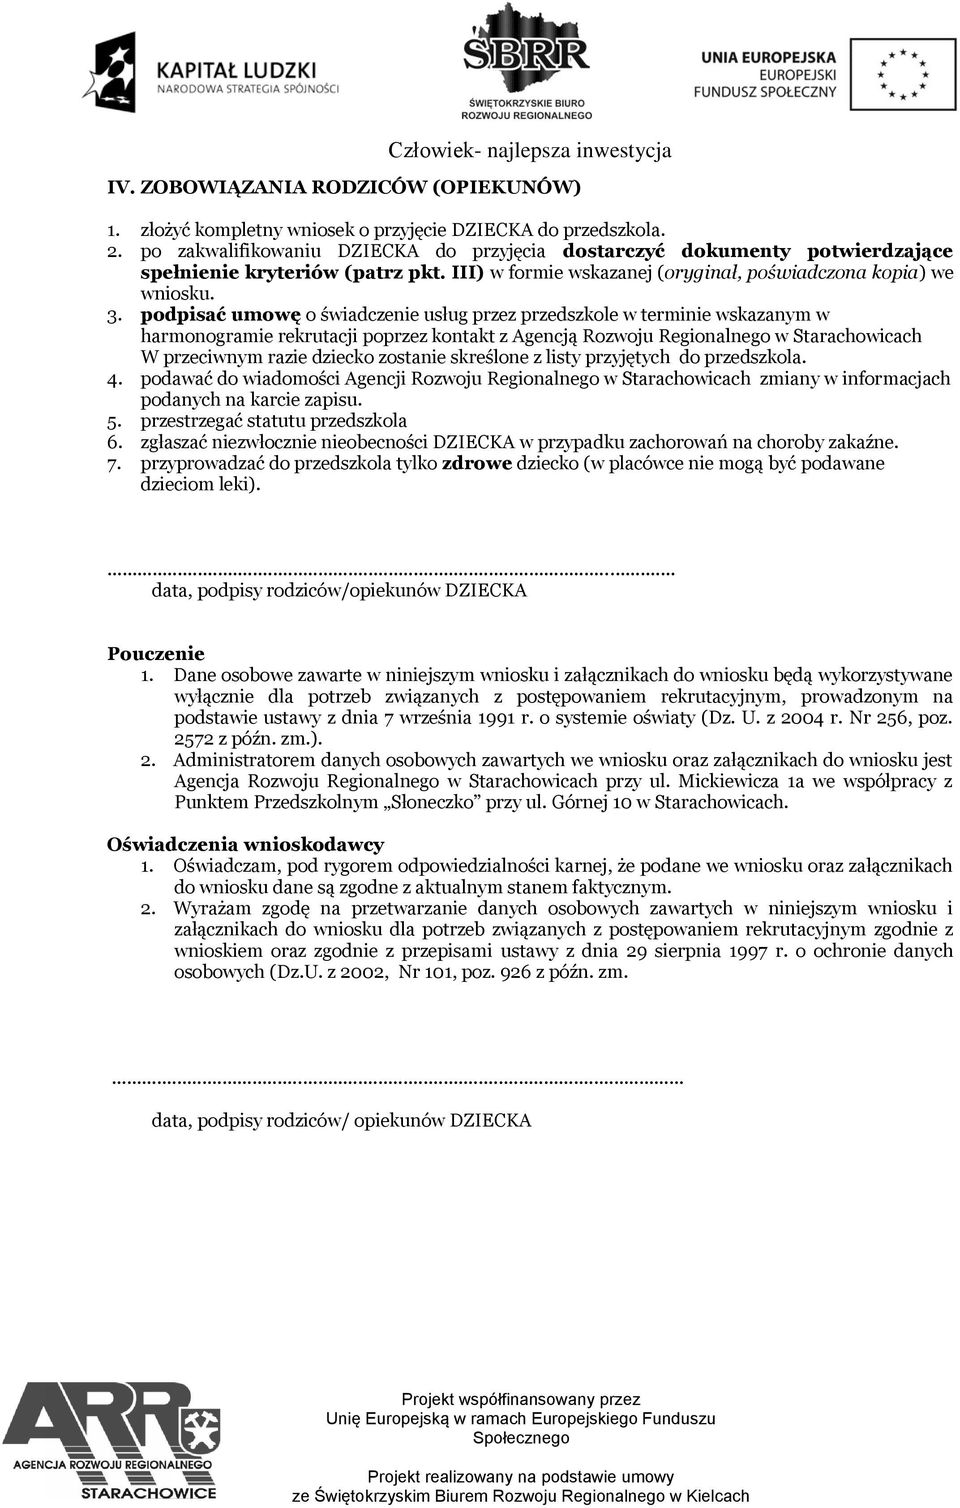 podpisać umowę o świadczenie usług przez przedszkole w terminie wskazanym w harmonogramie rekrutacji poprzez kontakt z Agencją Rozwoju Regionalnego w Starachowicach W przeciwnym razie dziecko